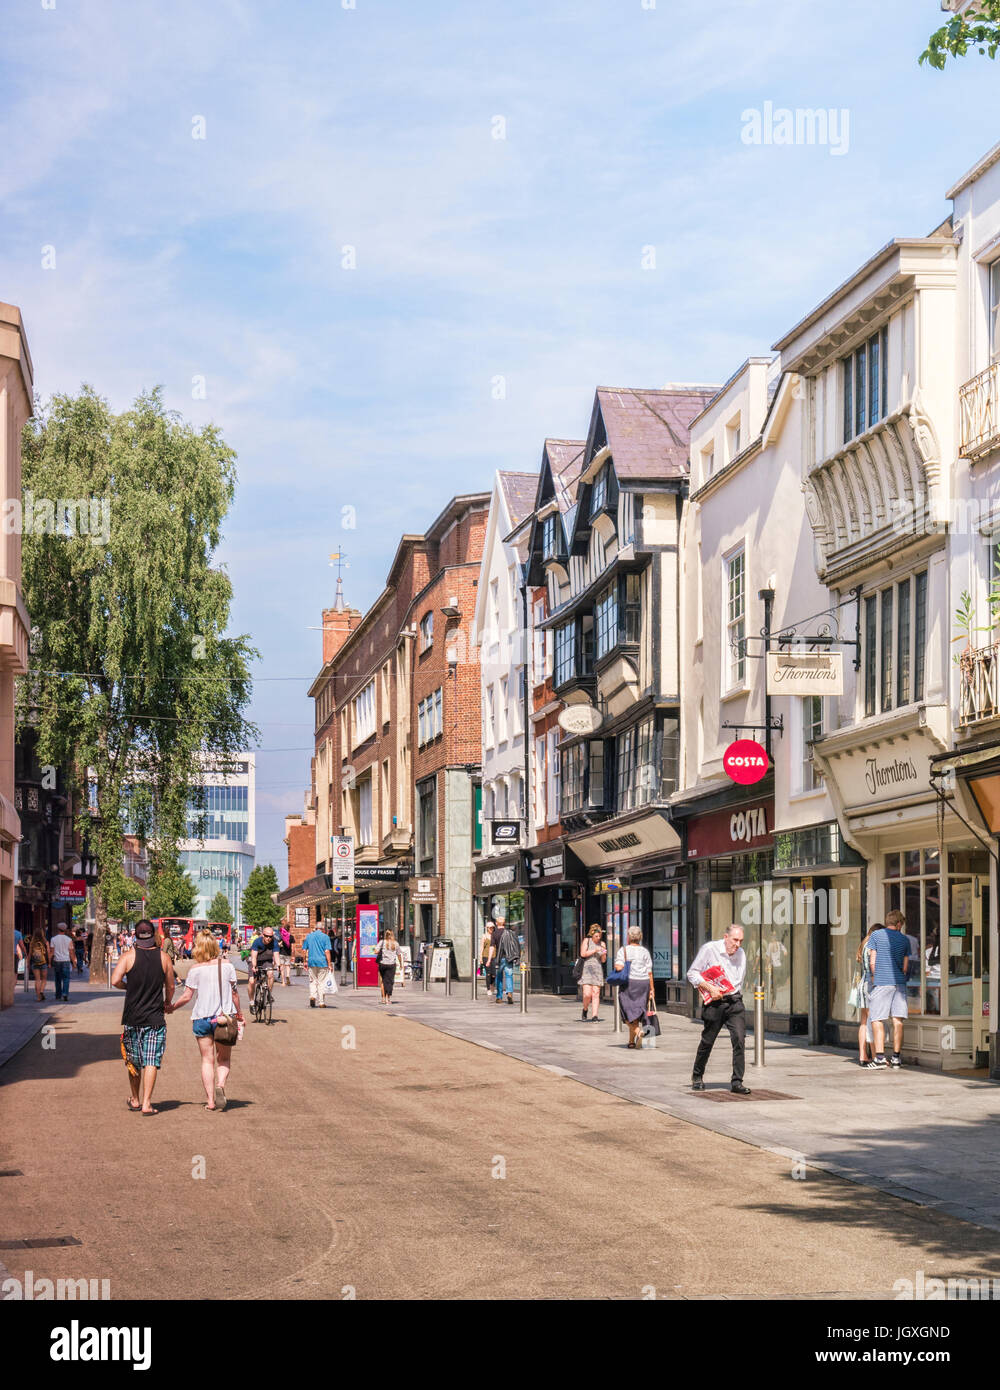 20. Juni 2017: Exeter, Devon, England, UK - Shopping in der High Street auf einem feinen Sommertag. Stockfoto